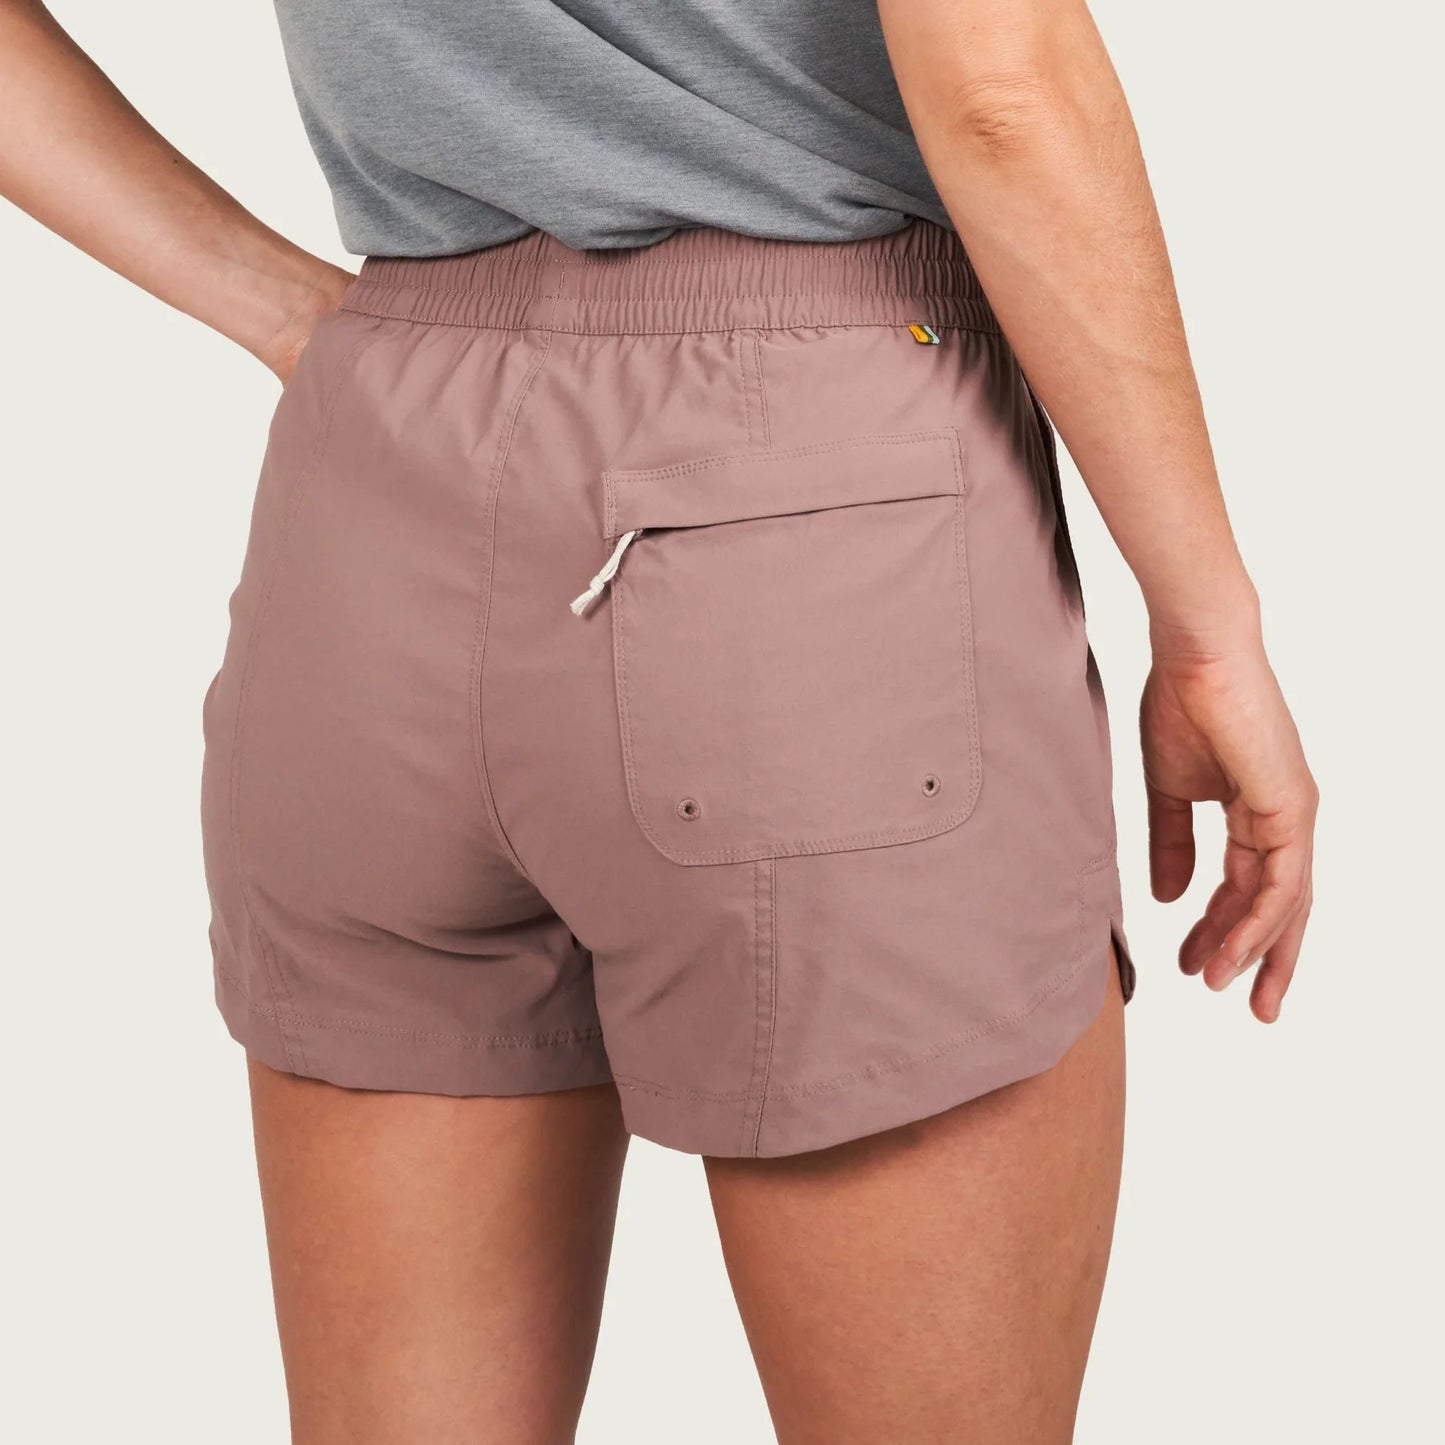 Marsh Wear Women's Prime Shorts- Antler